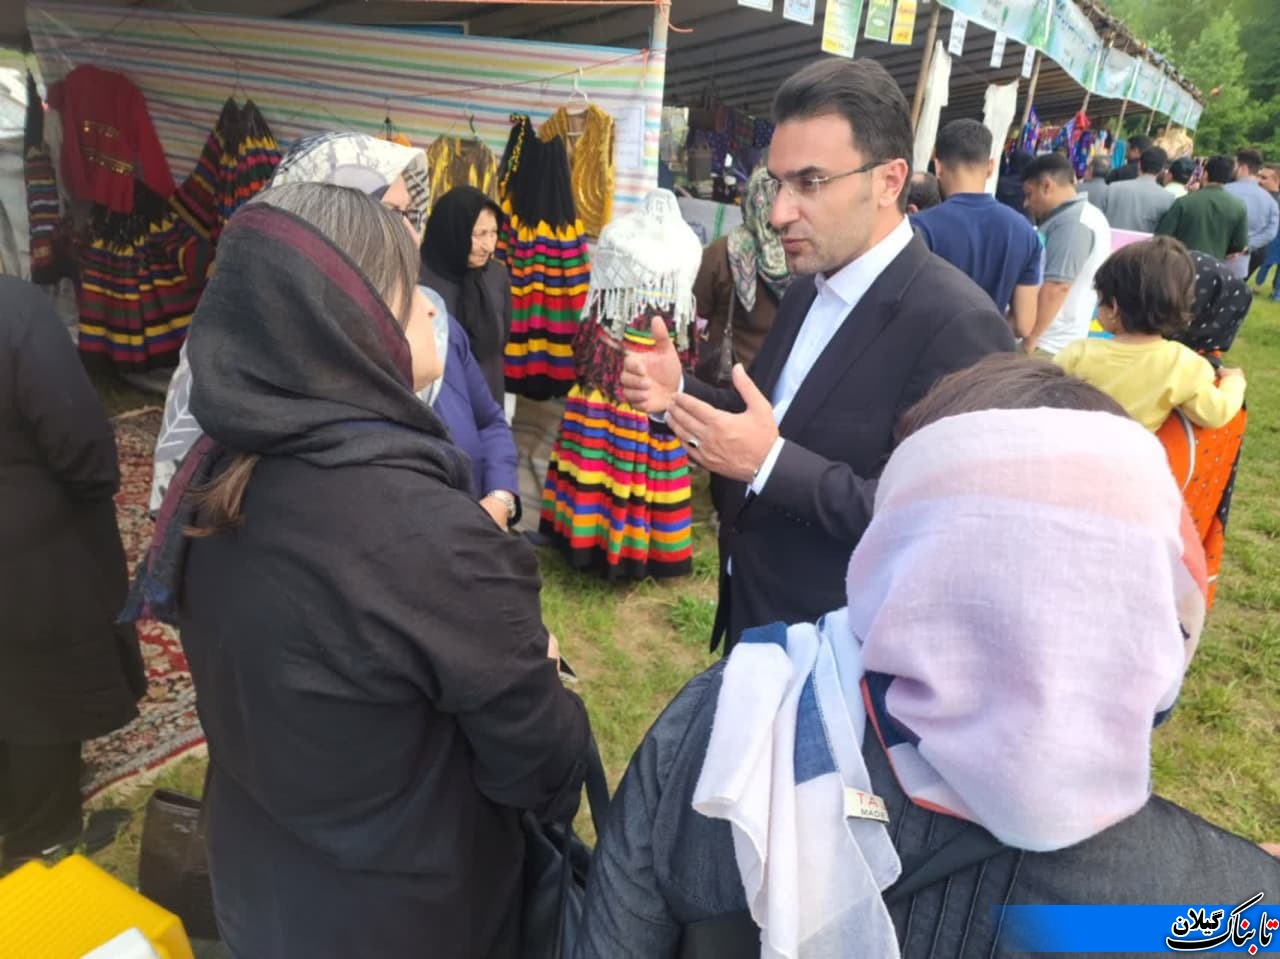 بیش از پنج هزار نفر در اولین جشنواره شکرانه برداشت چای در واجارگاه شرکت کردند